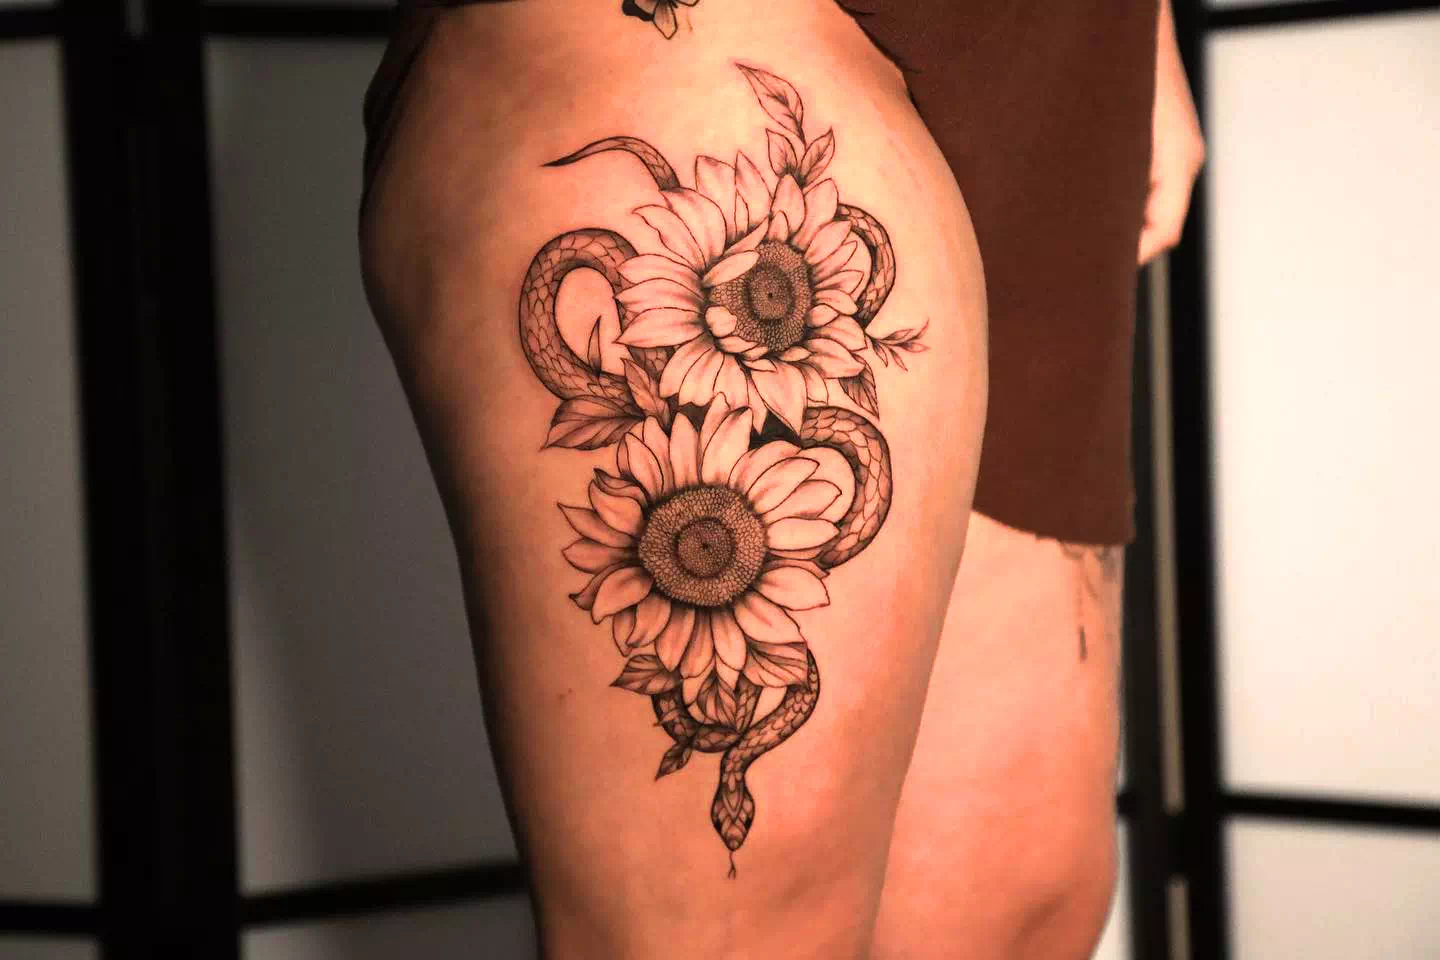 Sonnenblume Tattoo auf Oberschenkel 1